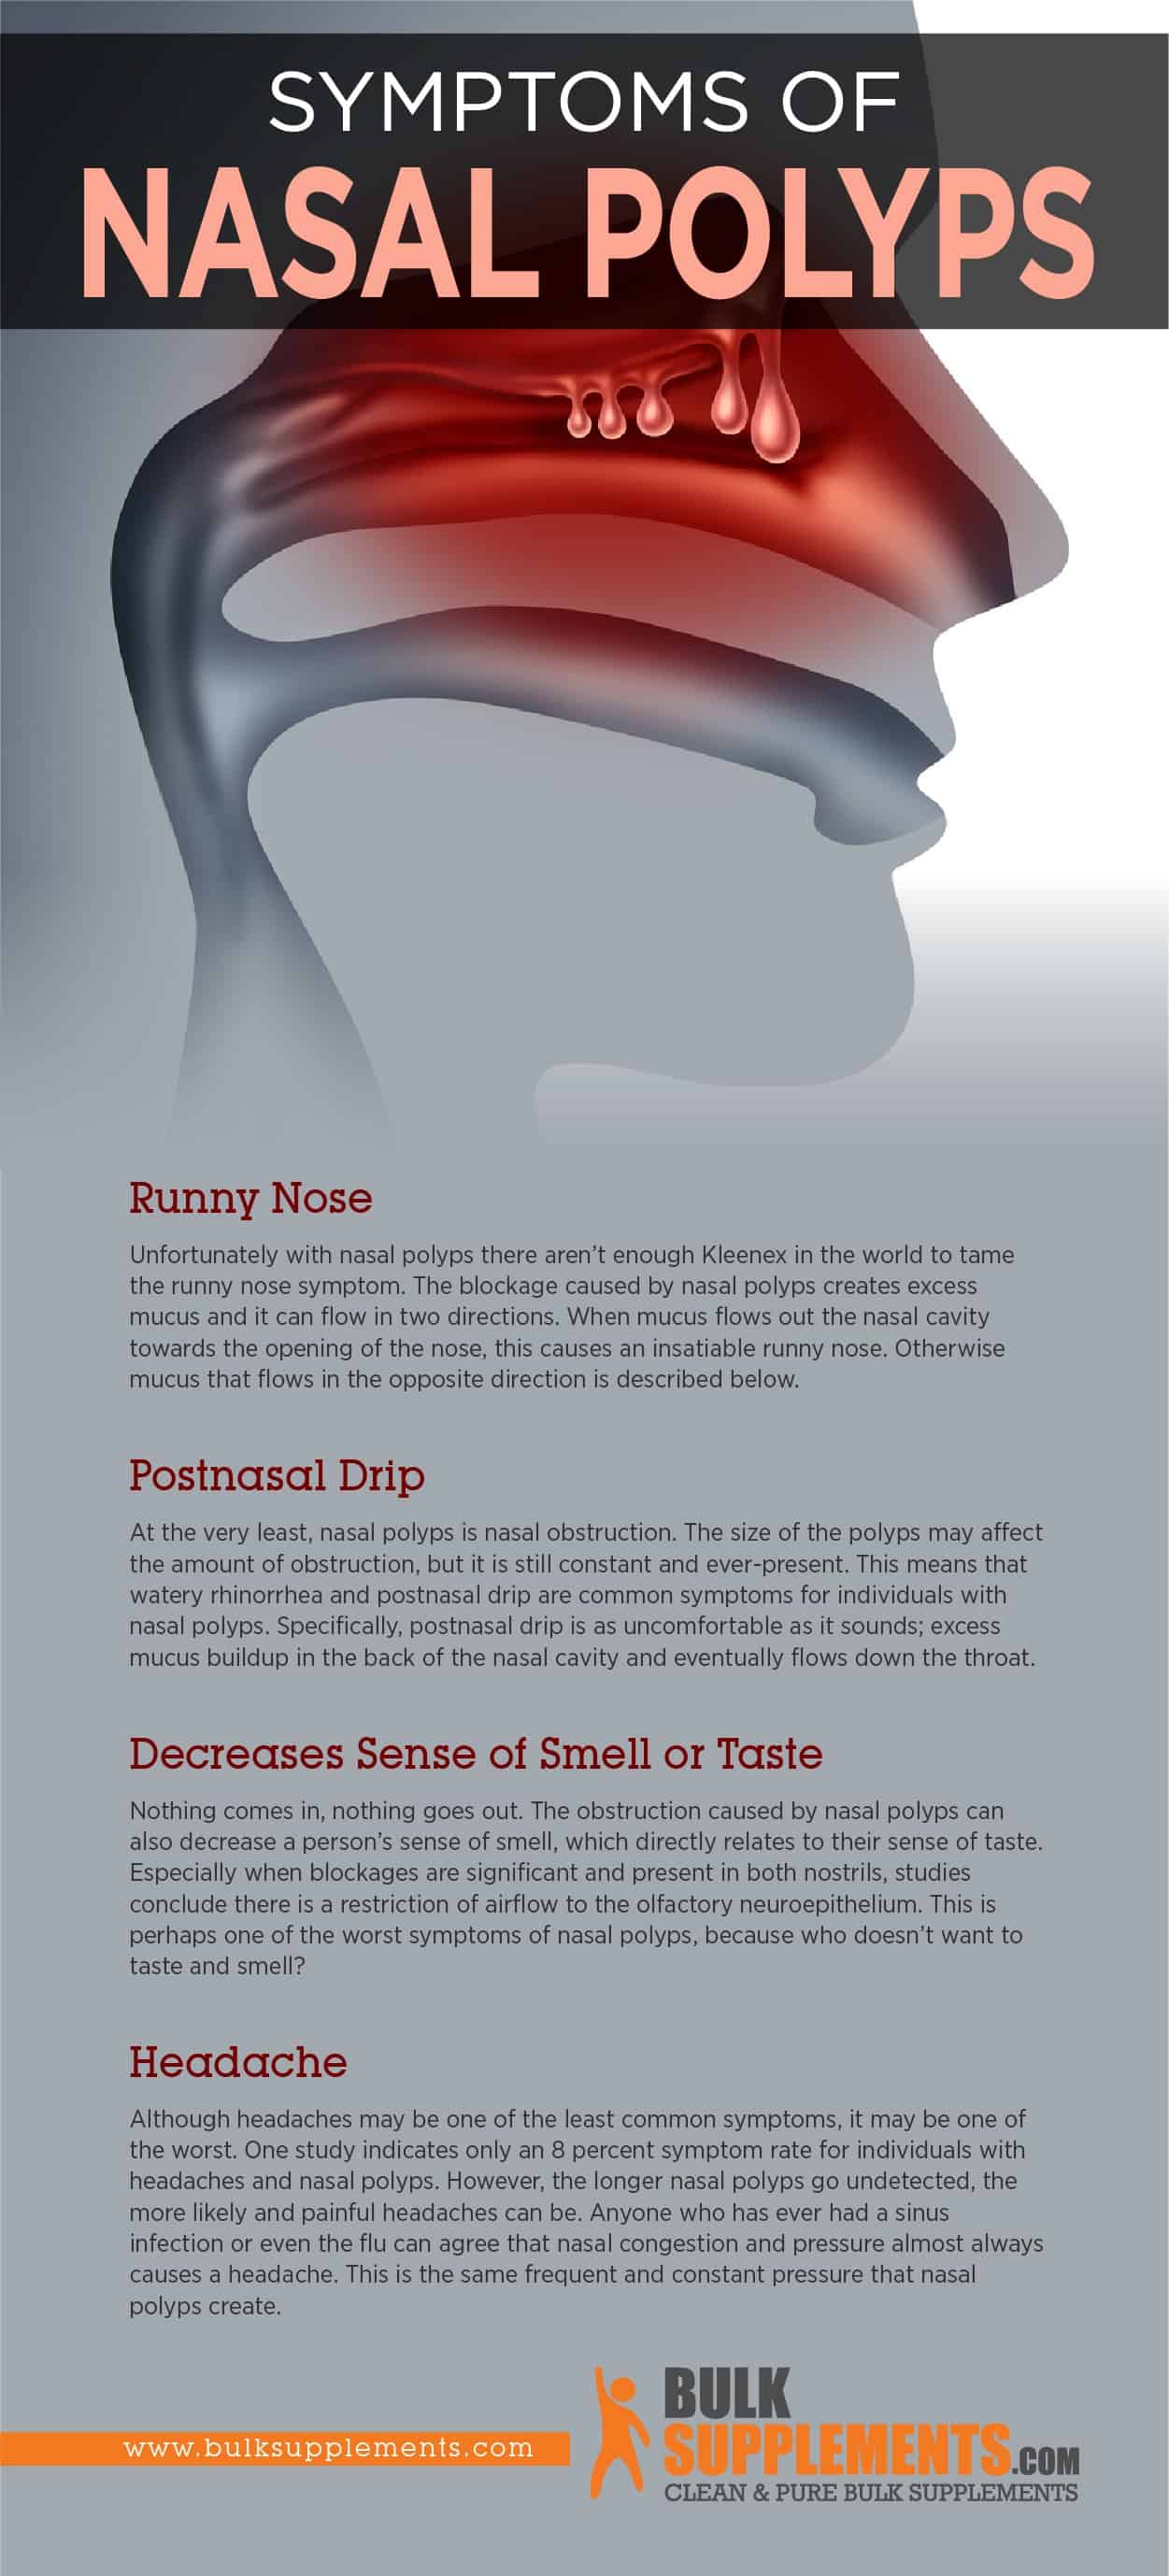 Symptoms of Nasal Polyps